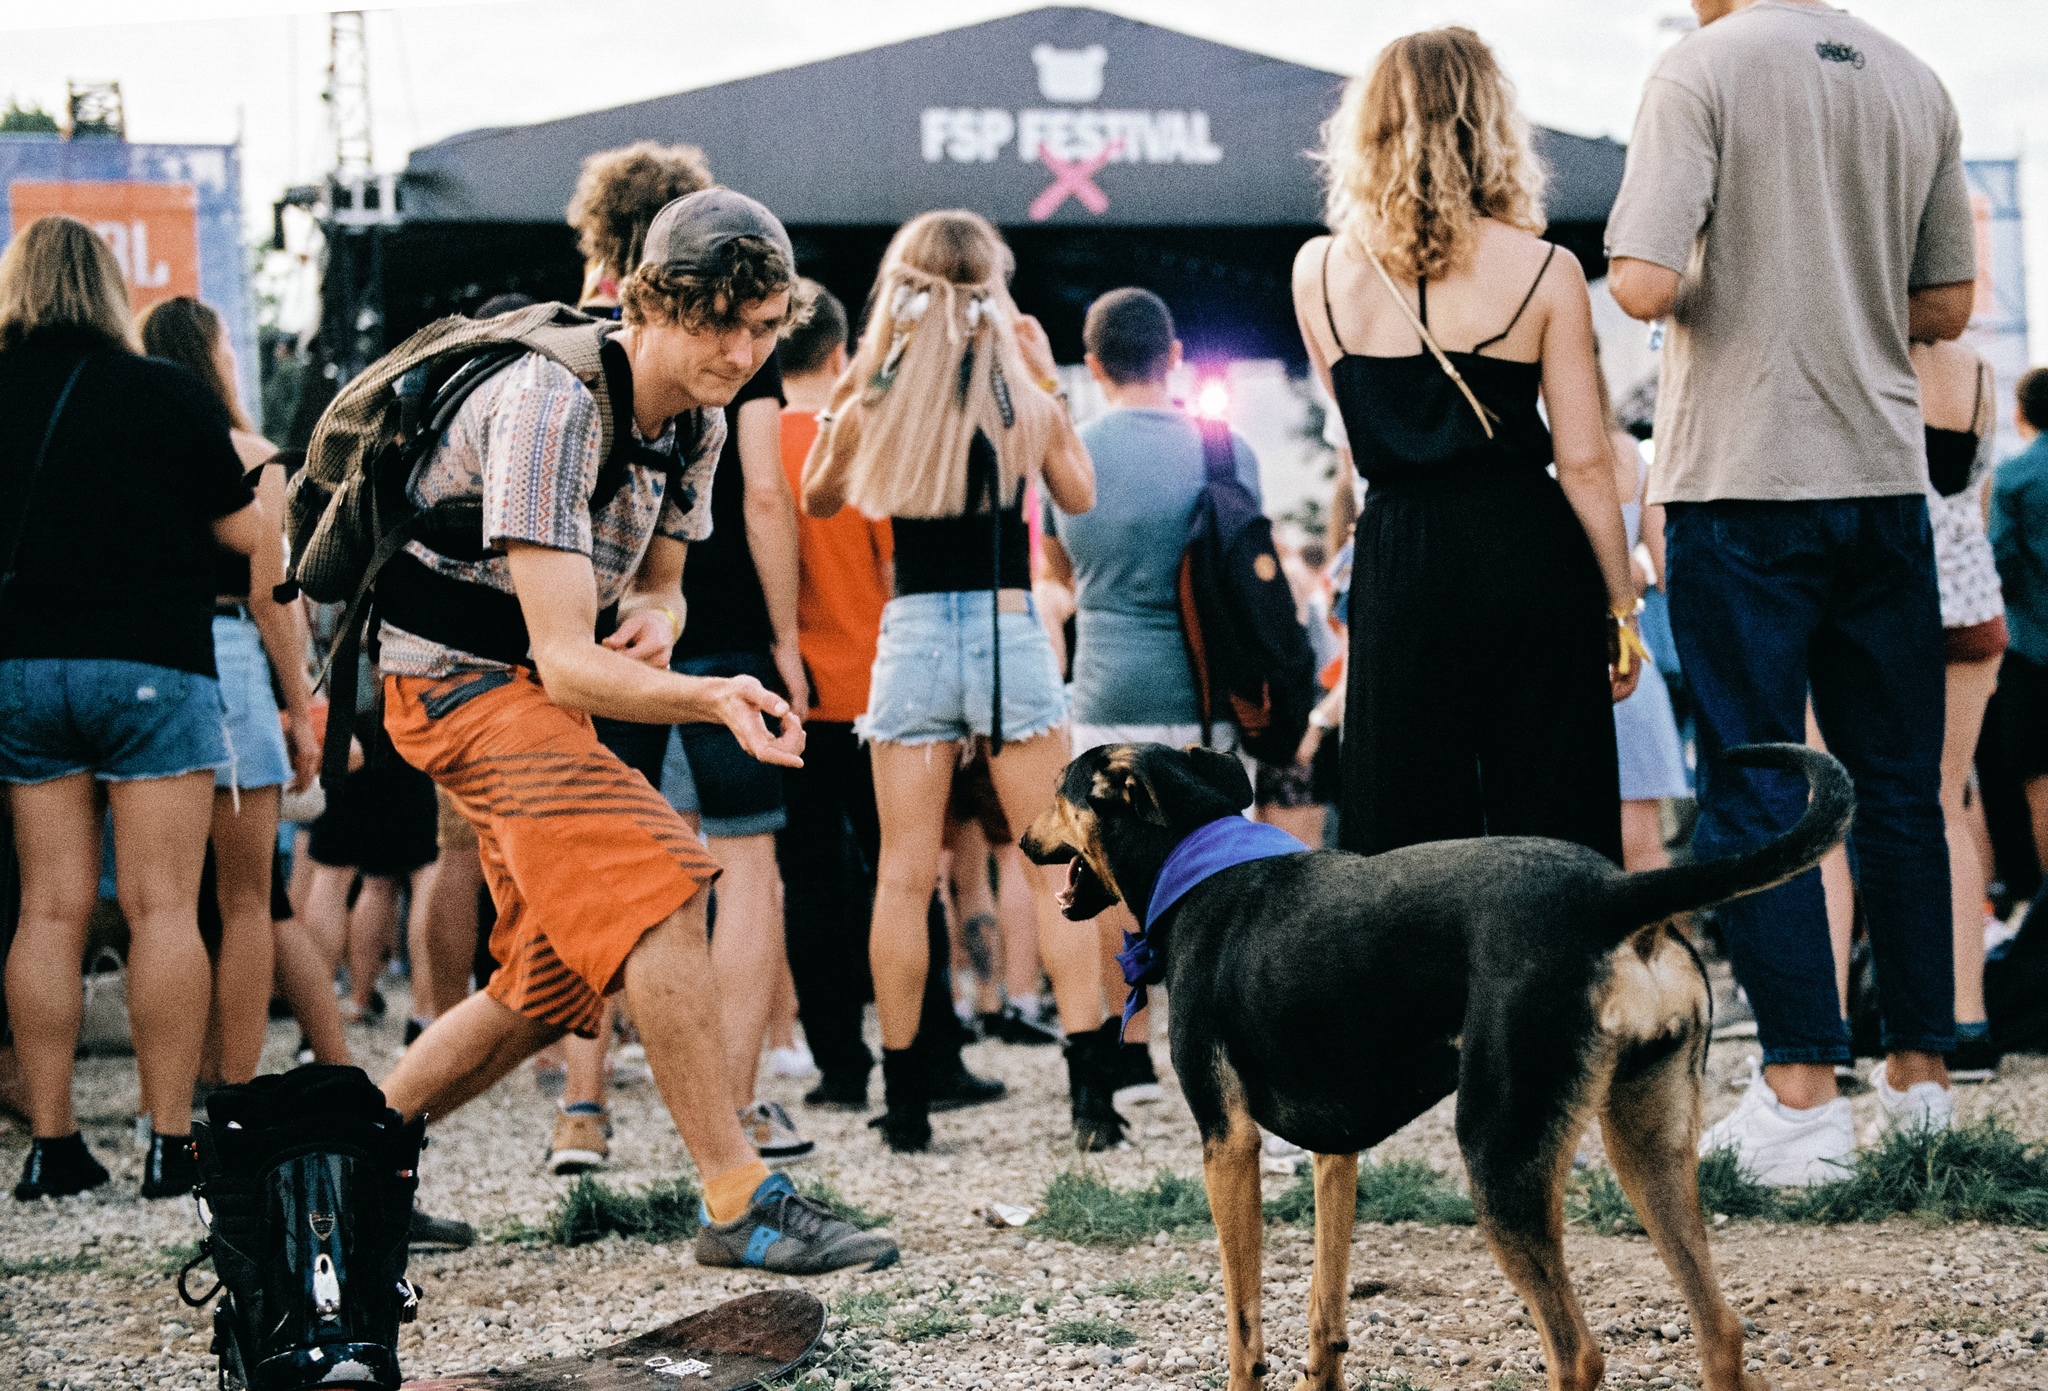 “Смотрим на ситуацию”: летние фестивали теряют хедлайнеров, но не сдаются